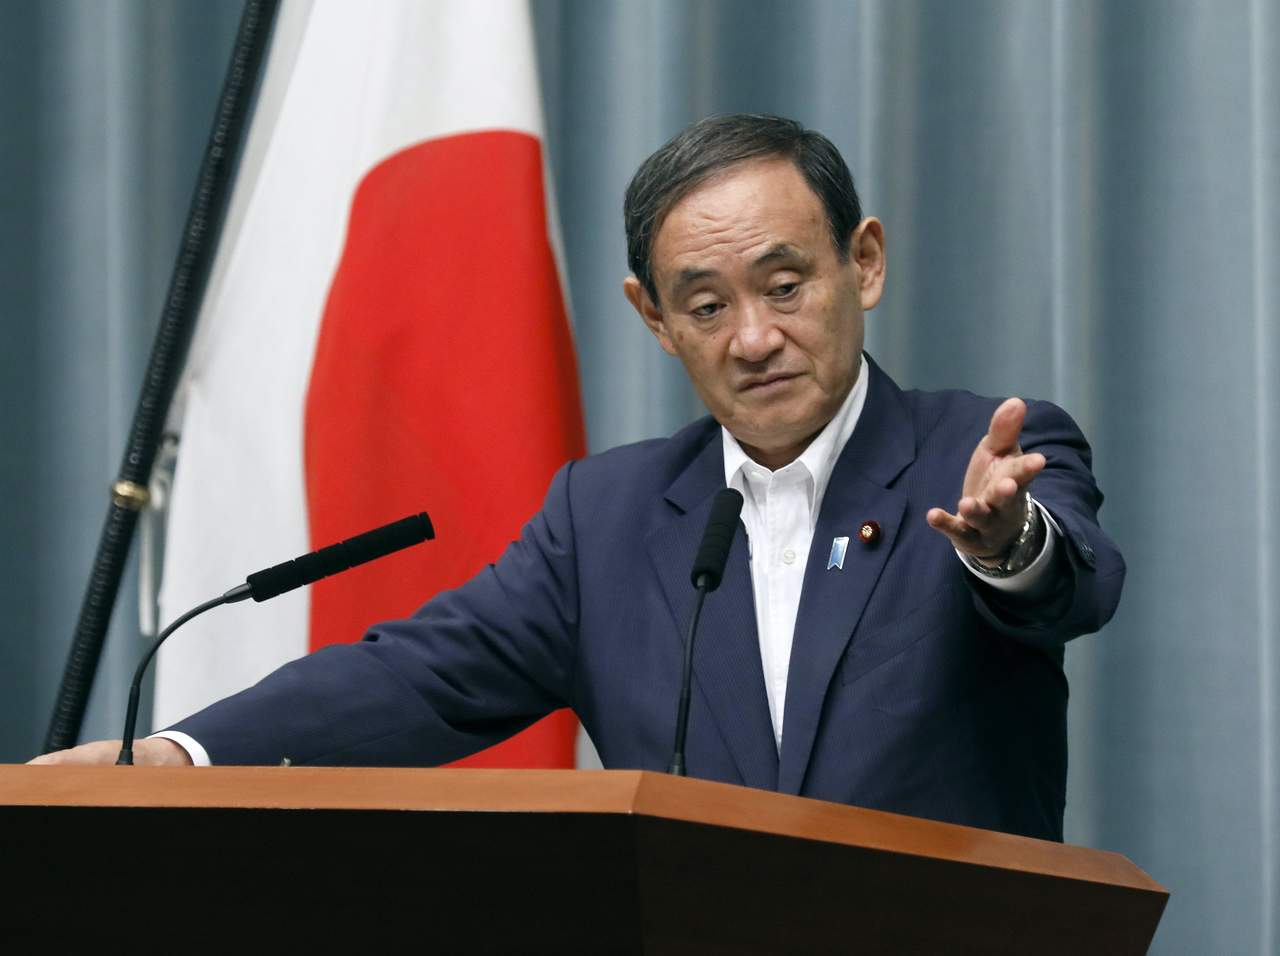 El ministro portavoz del Ejecutivo nipón, Yoshihide Suga, afirmó hoy en una rueda de prensa en Tokio que 'el desarrollo de misiles y nuclear (de Pyongyang) es una amenaza no sólo para Japón, sino para toda la región, por lo que no hay ningún cambio en nuestra política de presionar al Norte para que cambie su política'. (EFE)